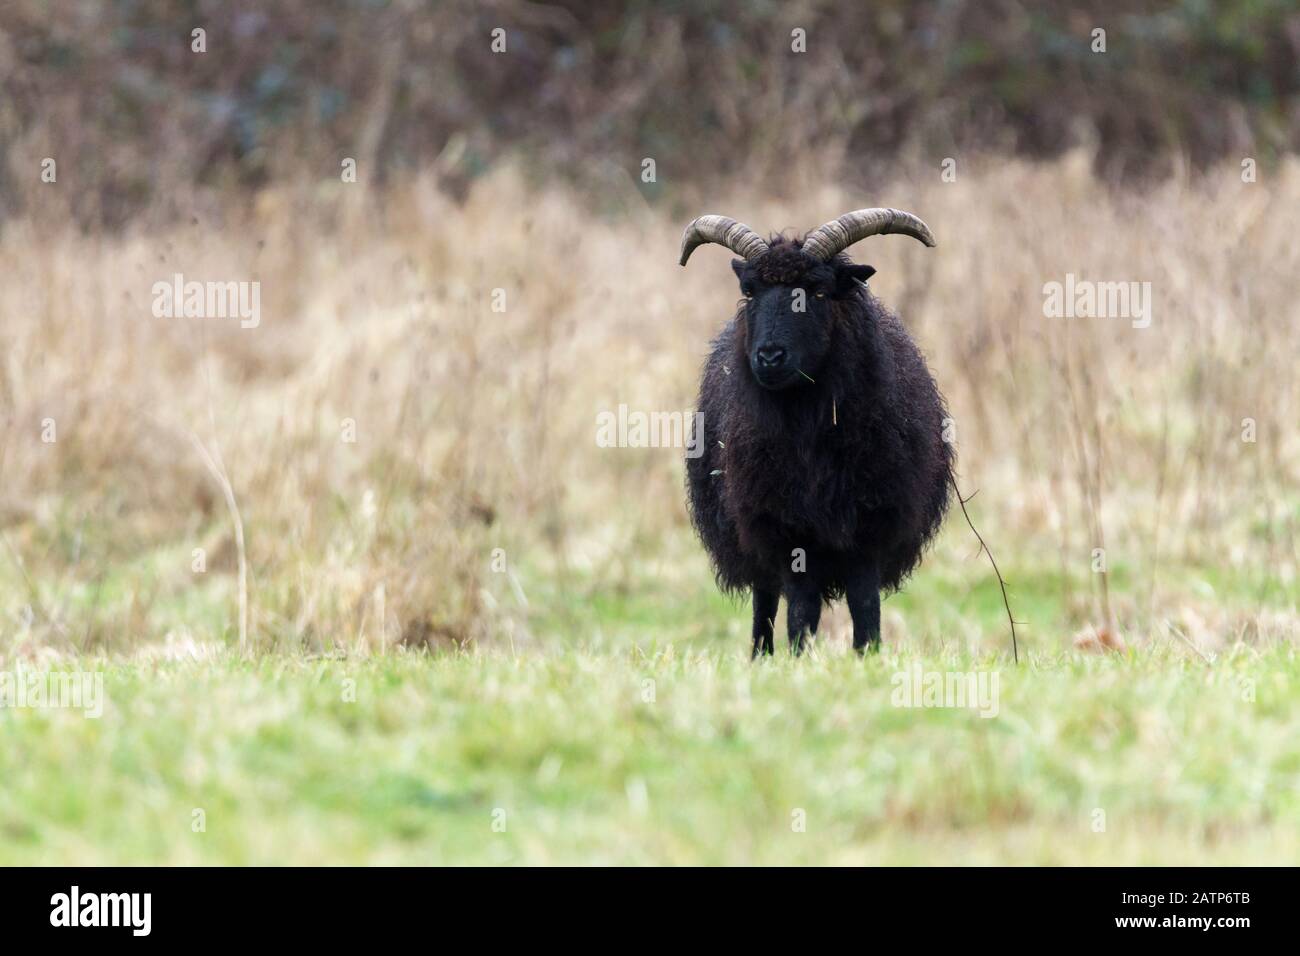 Una singola pecora ebrida nera nel prato della riserva naturale di Warnham, corna grandi di lana nera in piedi sull'erba. Usato in gruppi per pascolare vegetazione. Foto Stock